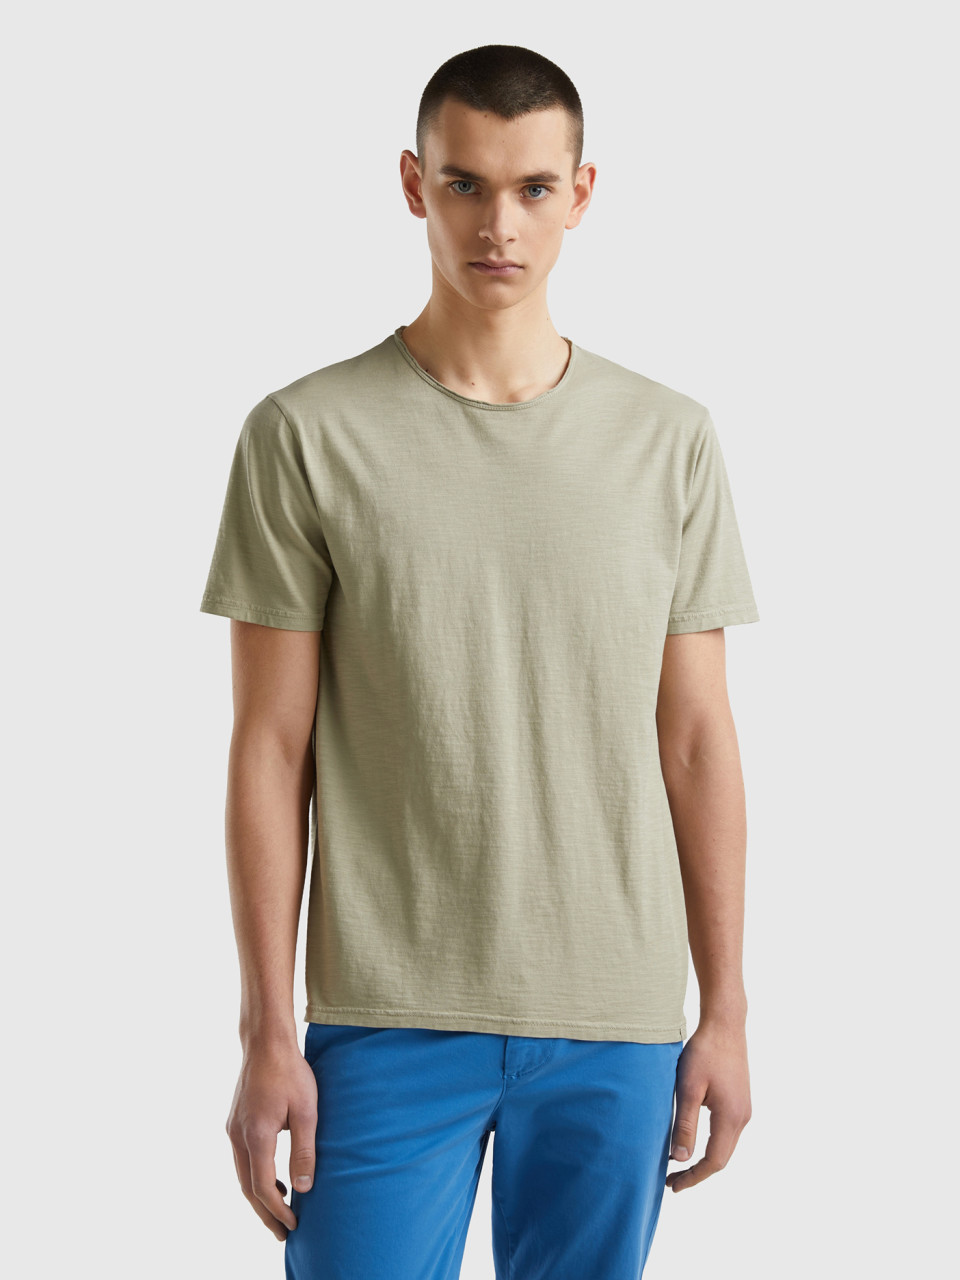 Benetton, T-shirt Verde Salvia In Cotone Fiammato, Verde Chiaro, Uomo